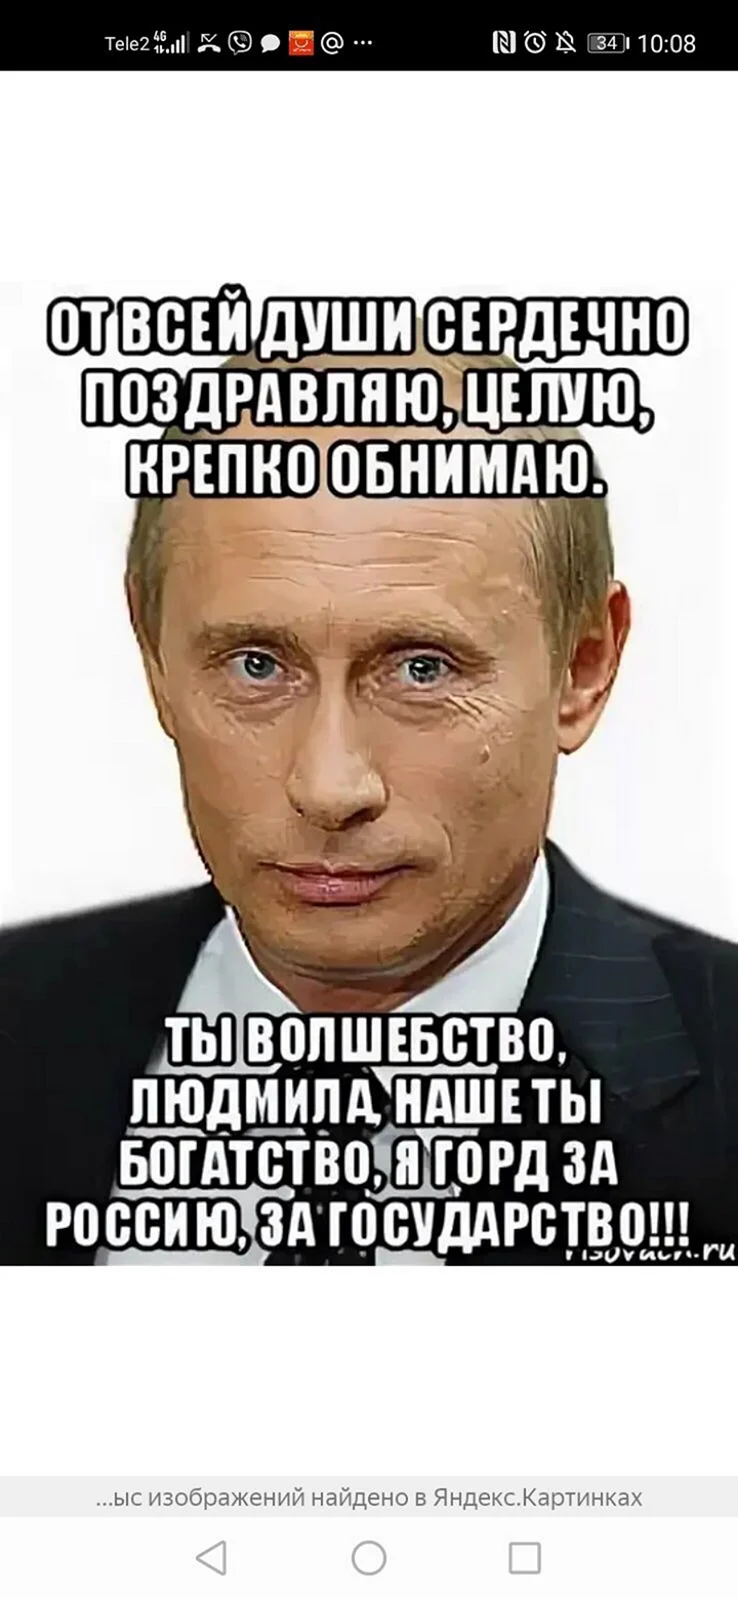 Аудио поздравления Татьяне от Путина с Днем Рождения